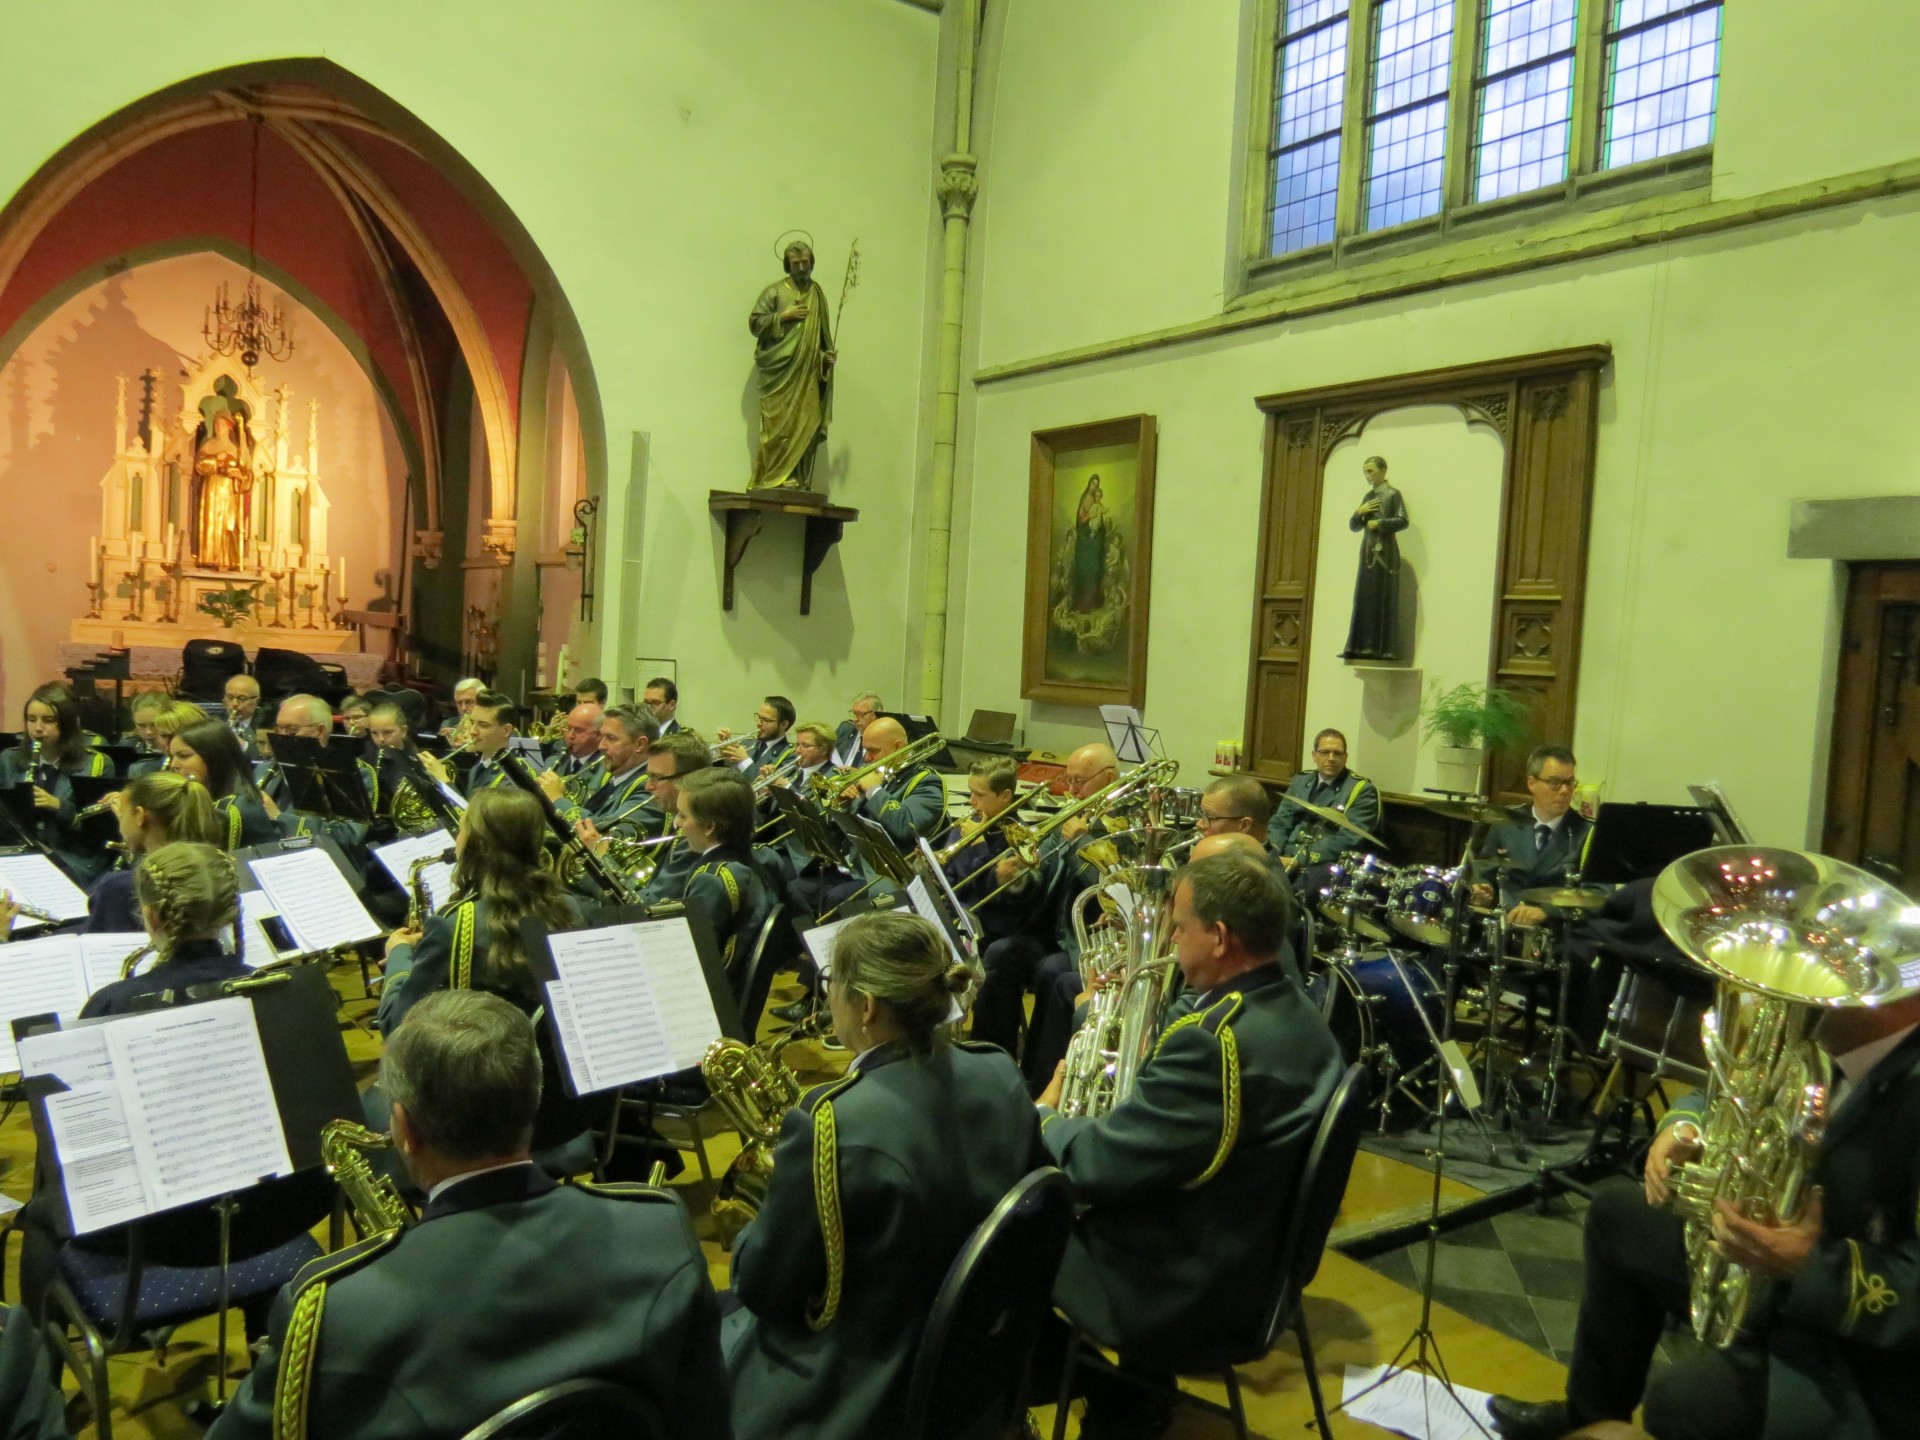 Harmonie Sint Walburga viert Walburgadag op zaterdagavond 21 april om 18:30 uur.